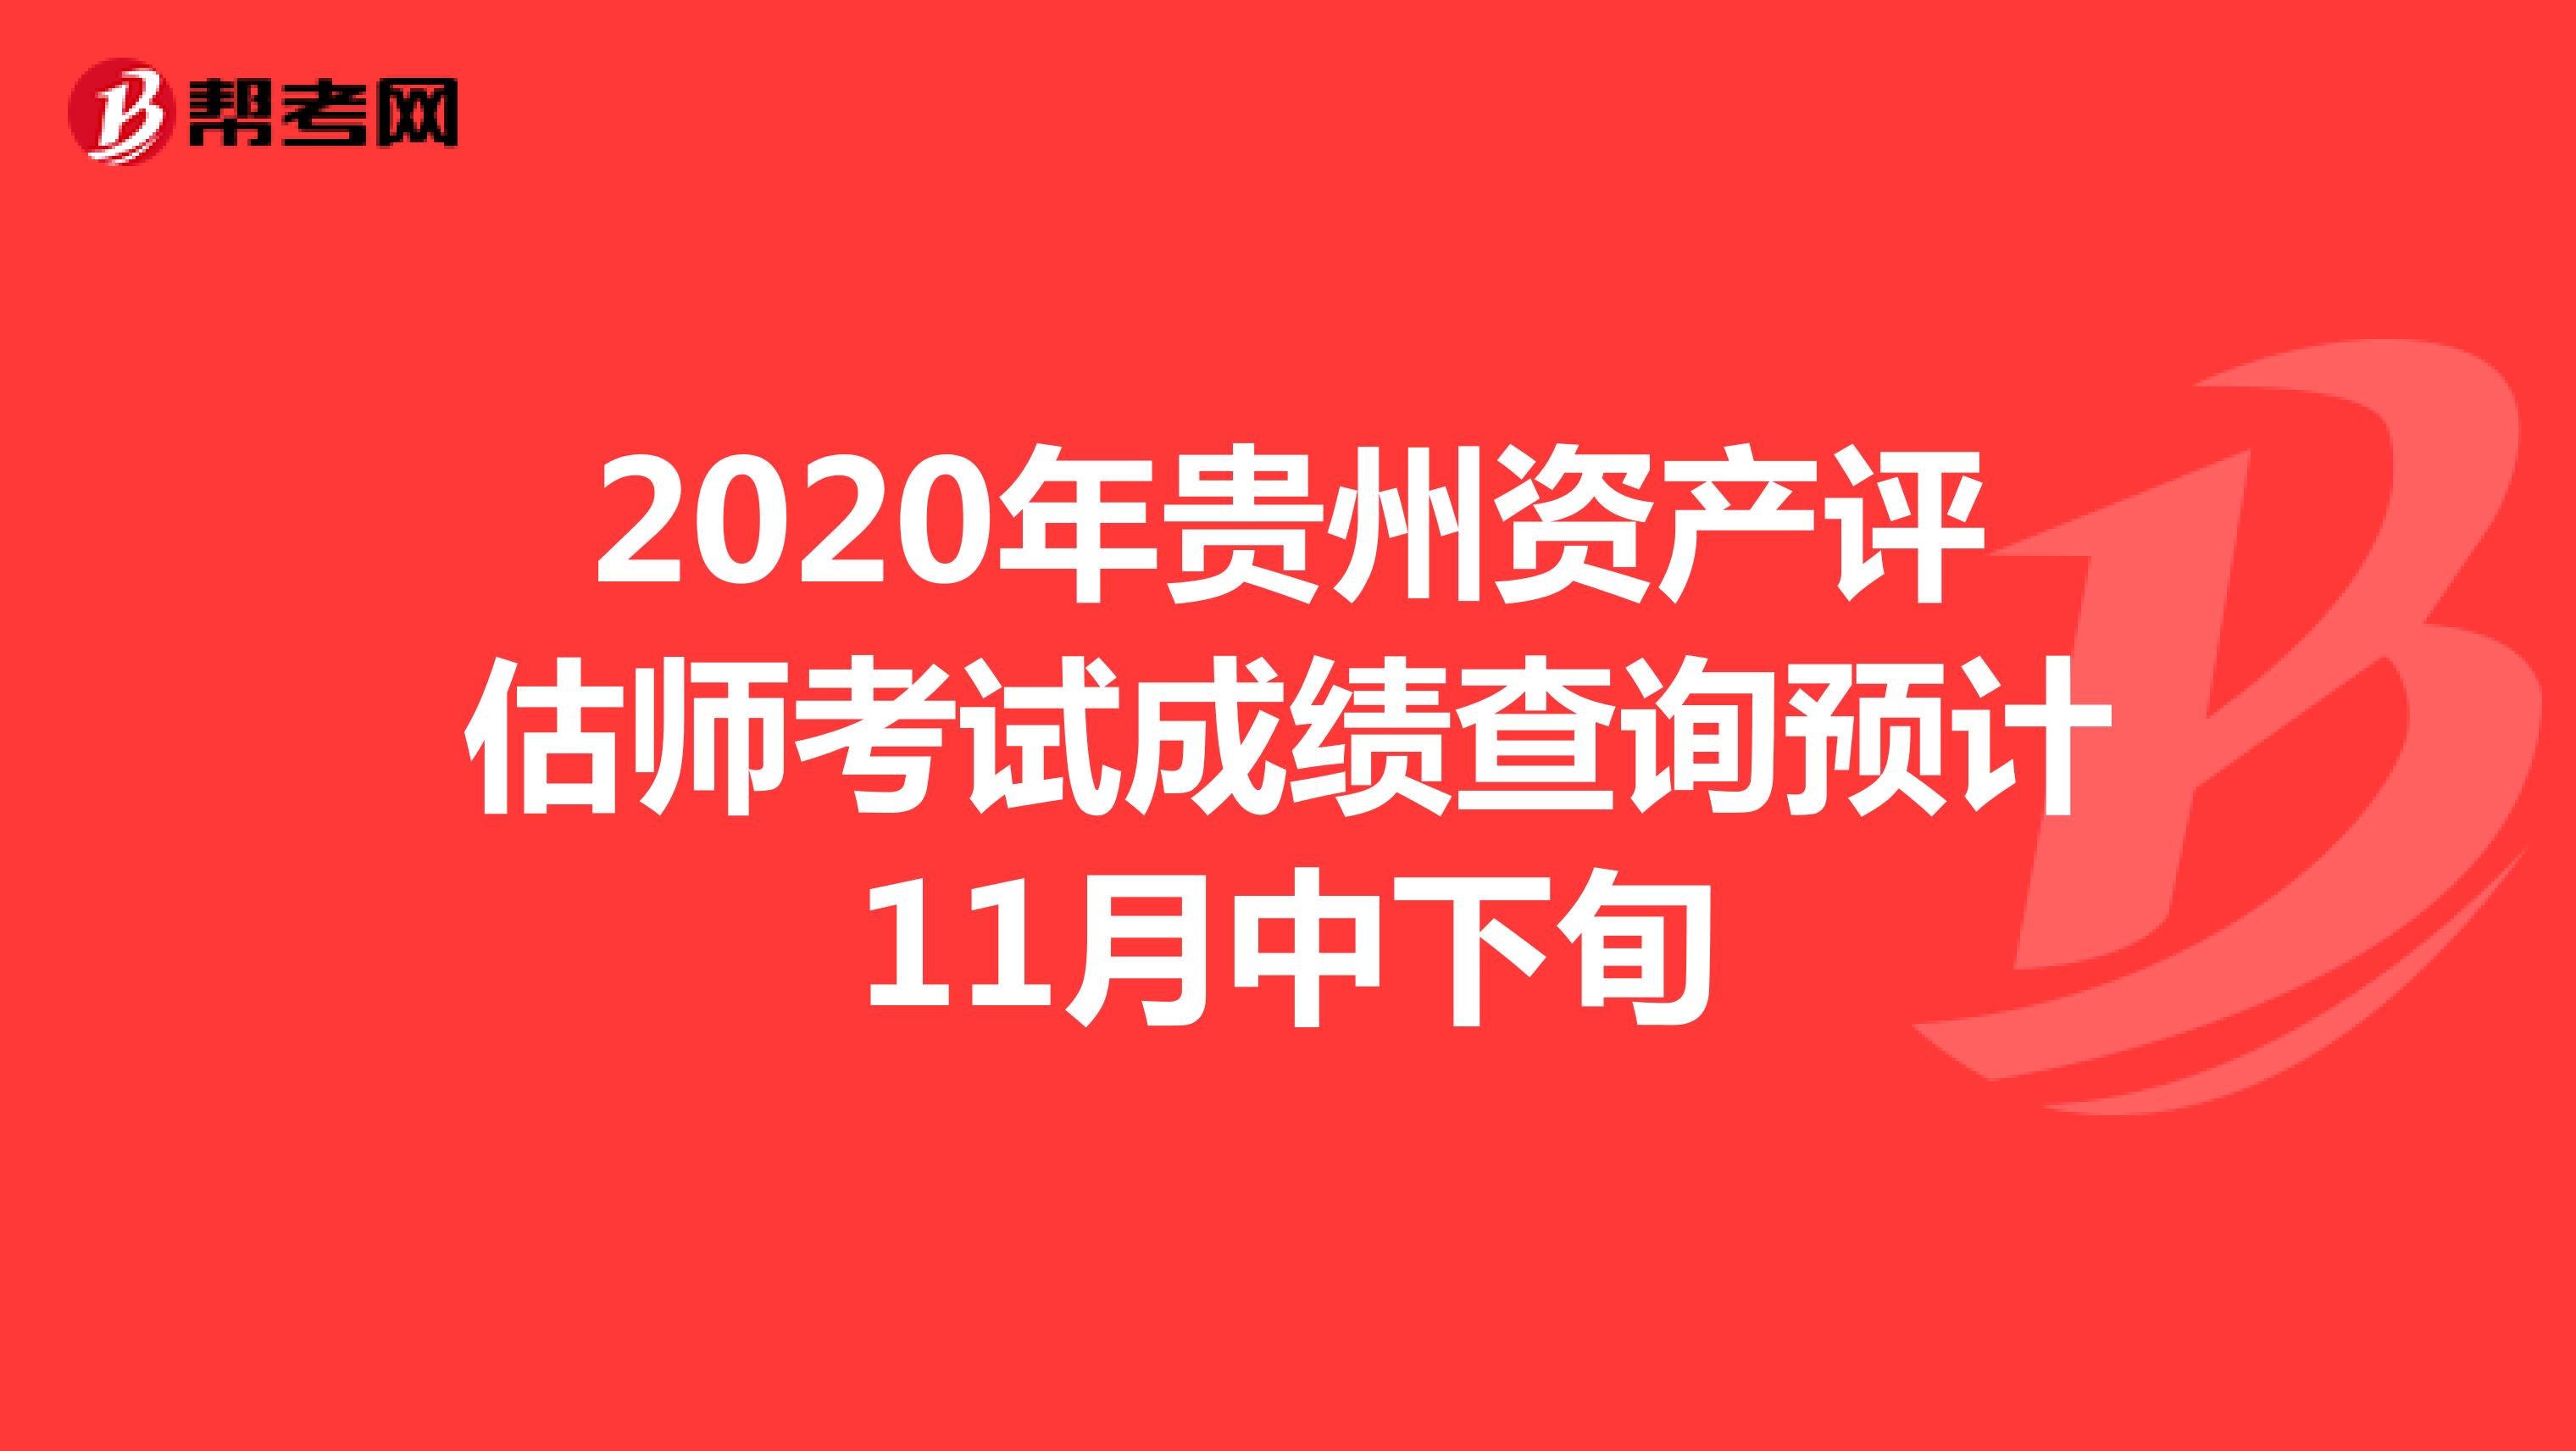 2020年贵州资产评估师考试成绩查询预计11月中下旬